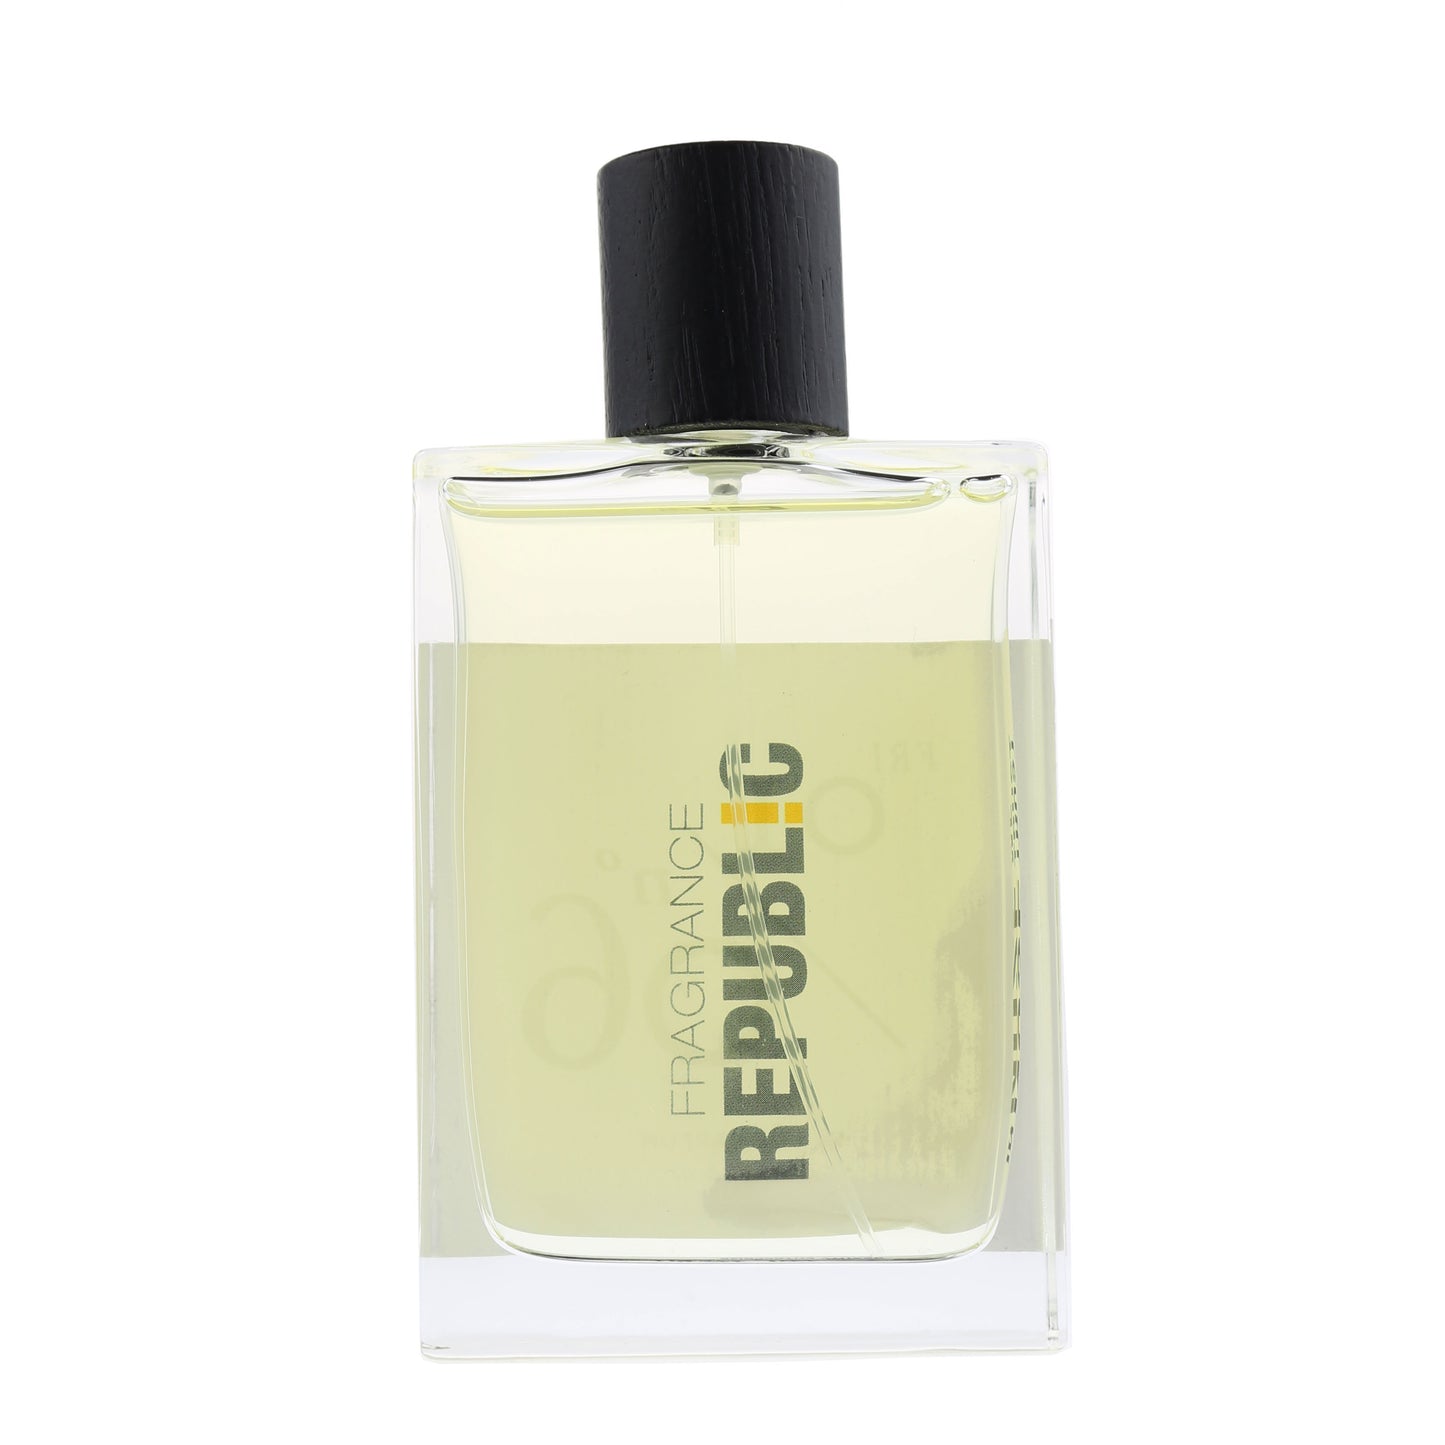 Fragrance Republic 'FR! 0I/06' Eau De Parfum 2.5oz/75ml Spray No Retail Box